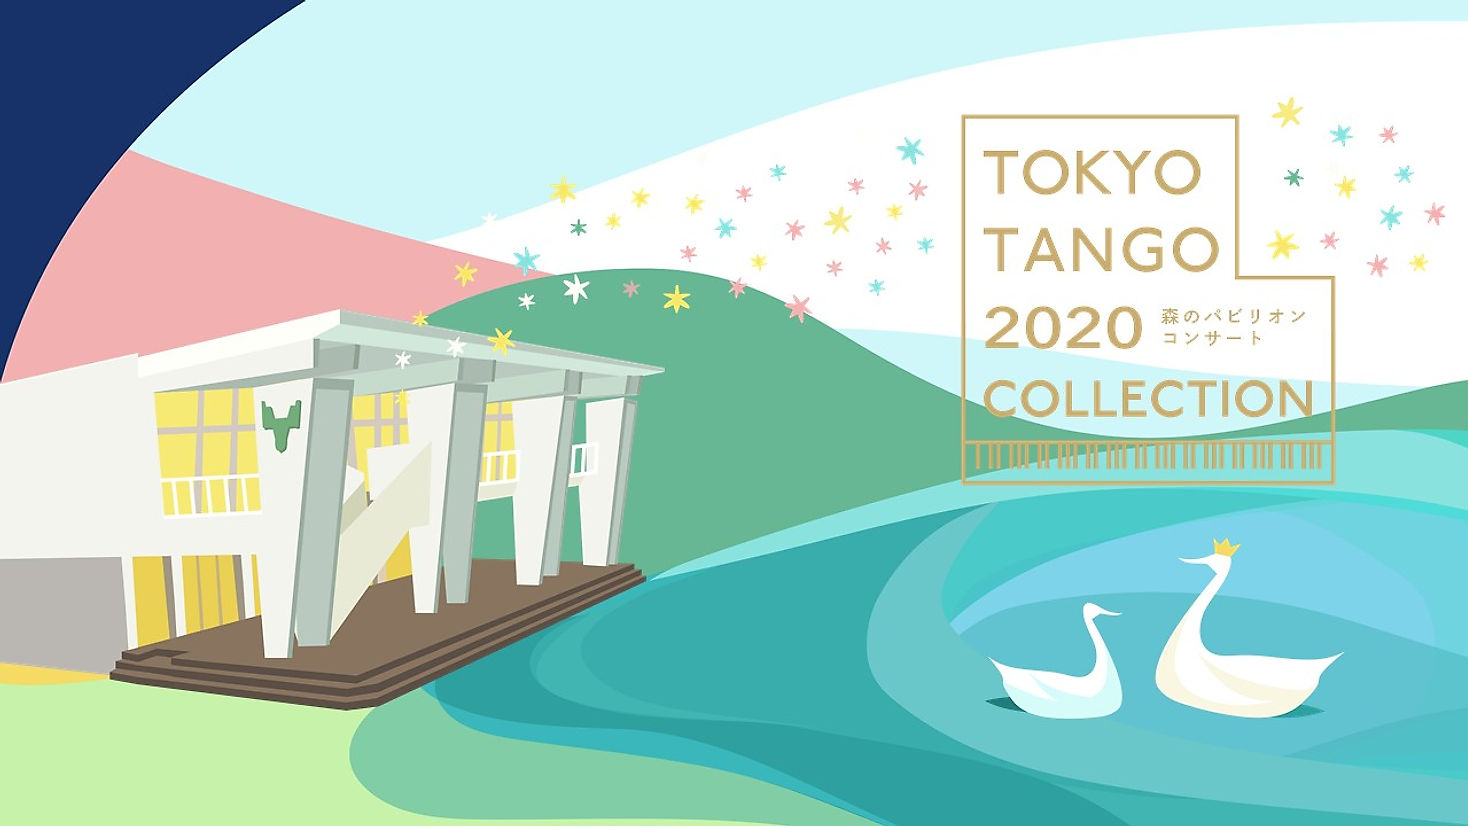 TOKYO TANGO 2020 COLLECTION